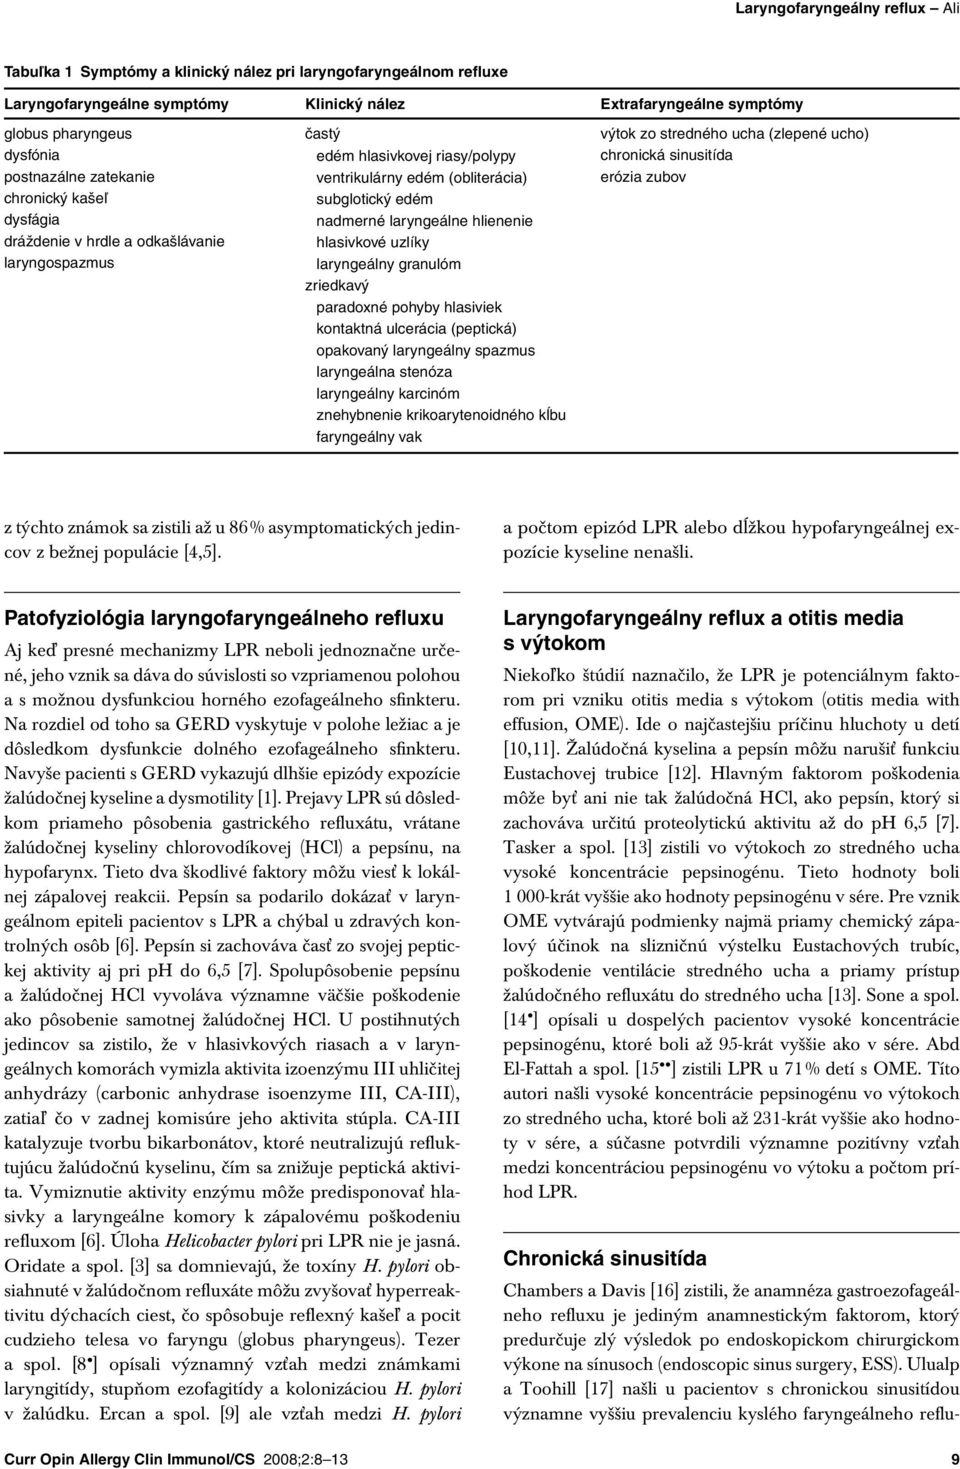 hrdle a odkašlávanie laryngospazmus subglotický edém nadmerné laryngeálne hlienenie hlasivkové uzlíky laryngeálny granulóm zriedkavý paradoxné pohyby hlasiviek kontaktná ulcerácia (peptická)